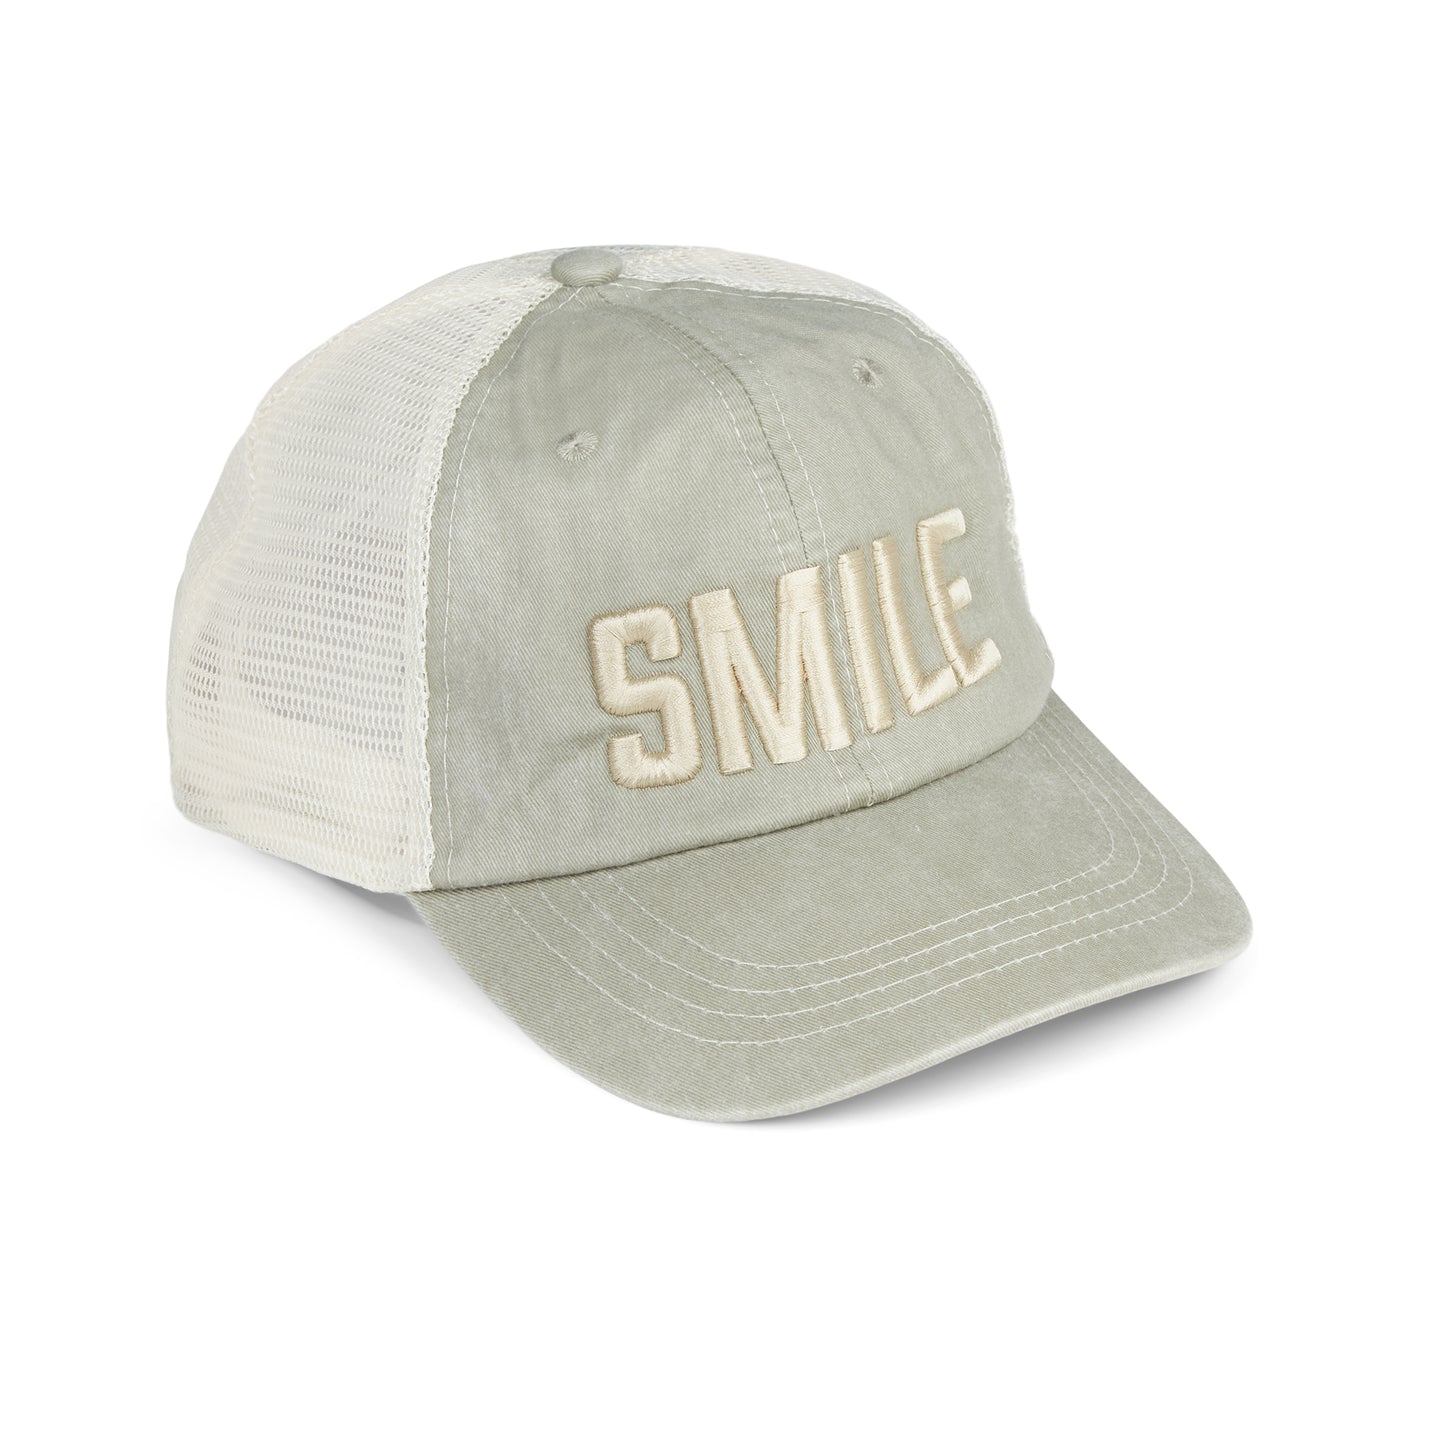 SMILE trucker hat